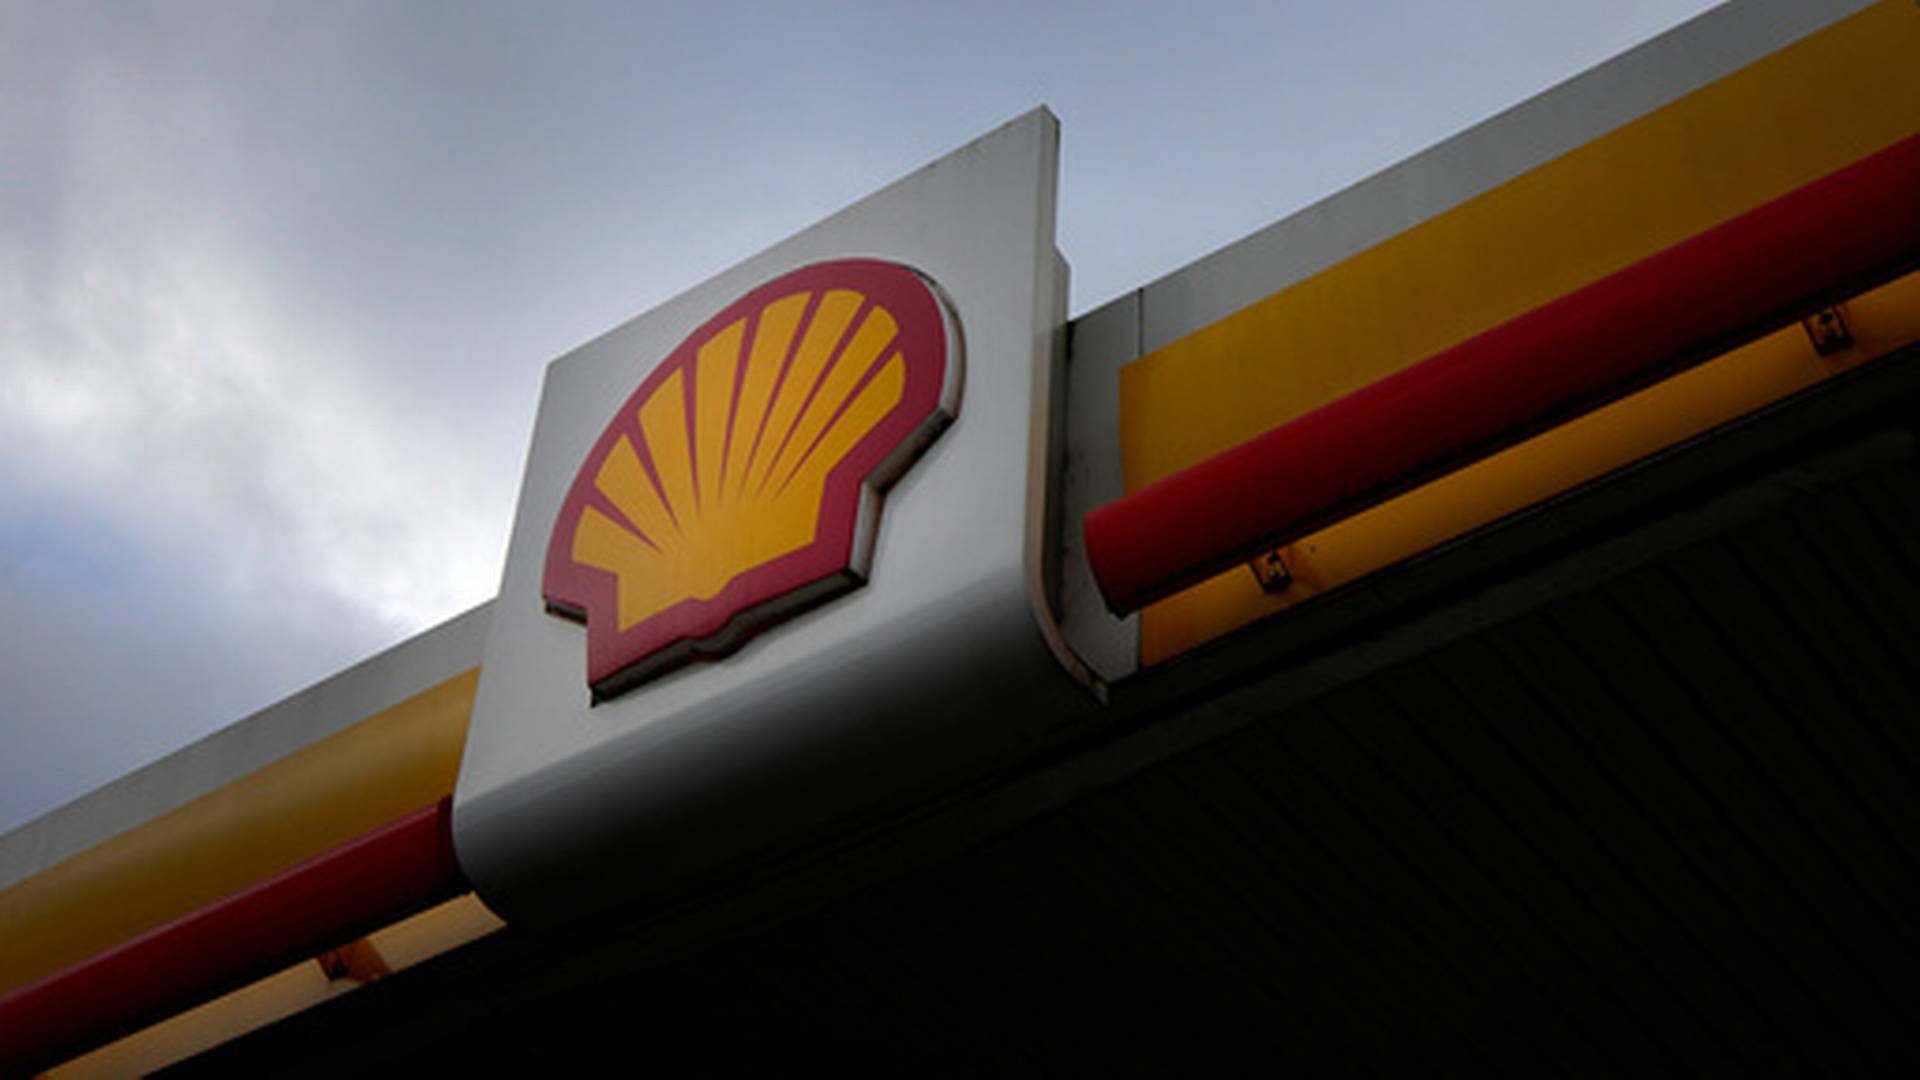 Shell var blant de som importerte mest russisk LNG i fjor, ifølge organisasjonen Global Witness. Illustrasjonsfoto. | Foto: Kirsty Wigglesworth / AP / NTB